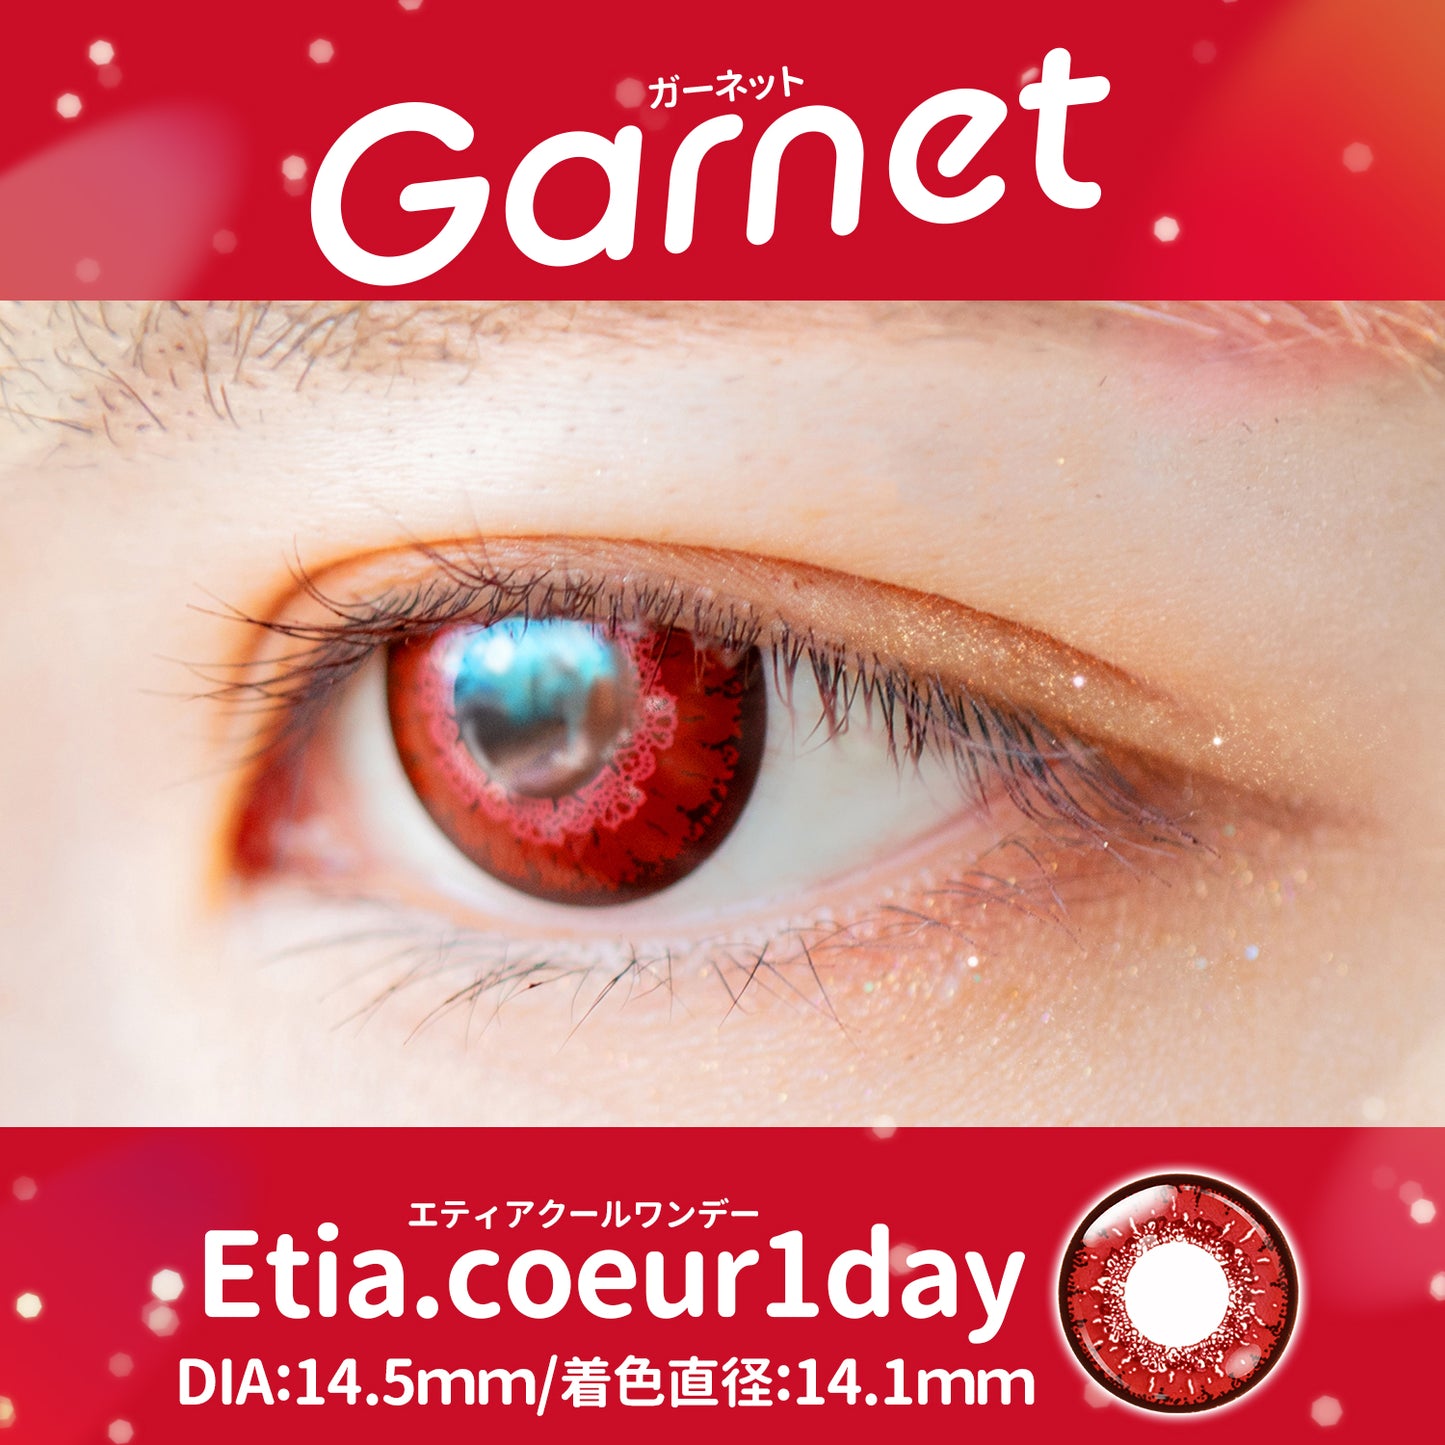 PUDDING Etia Coeur Garnet | 1 Day, 6 Pcs